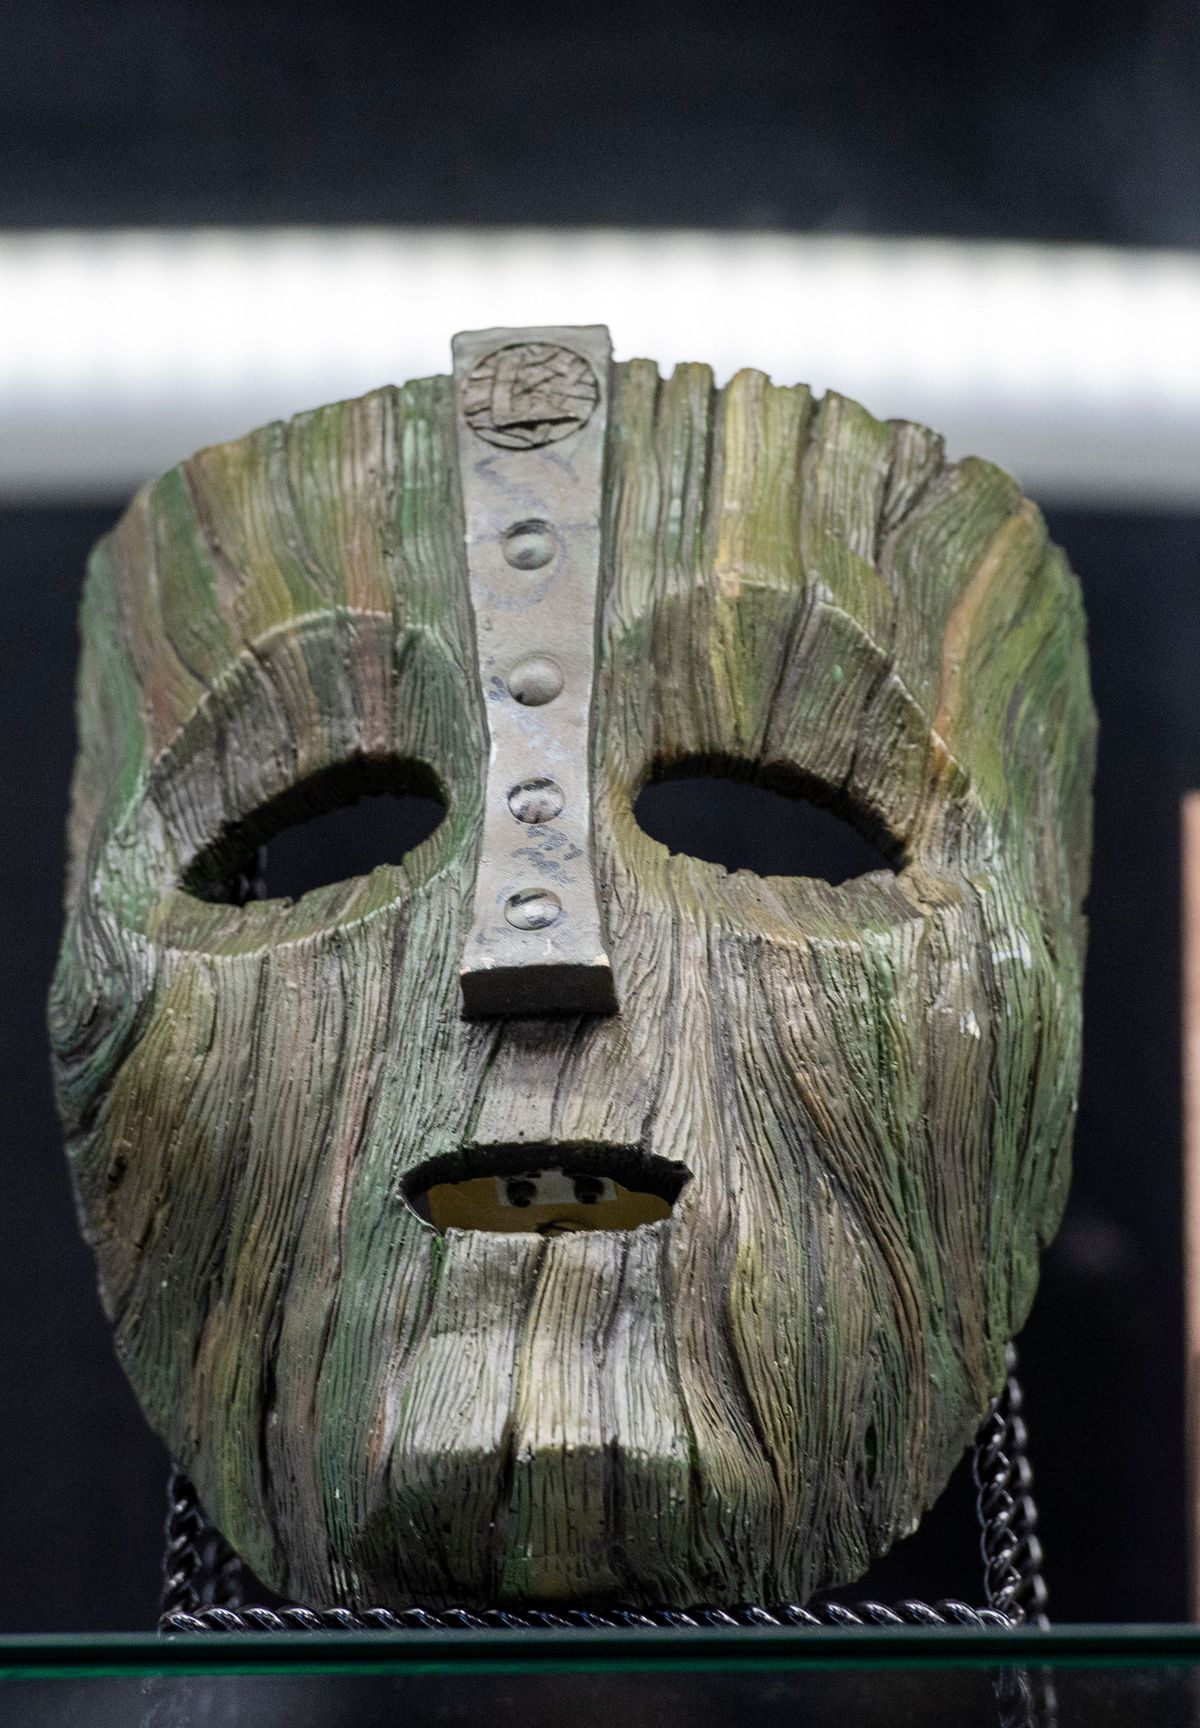 La maschera originale di Jim Carrey dal film The Mask, esposta durante un'anteprima stampa di Iconic Film & TV Memorabilia di Prop Store il 14 maggio 2021 a Valencia, California